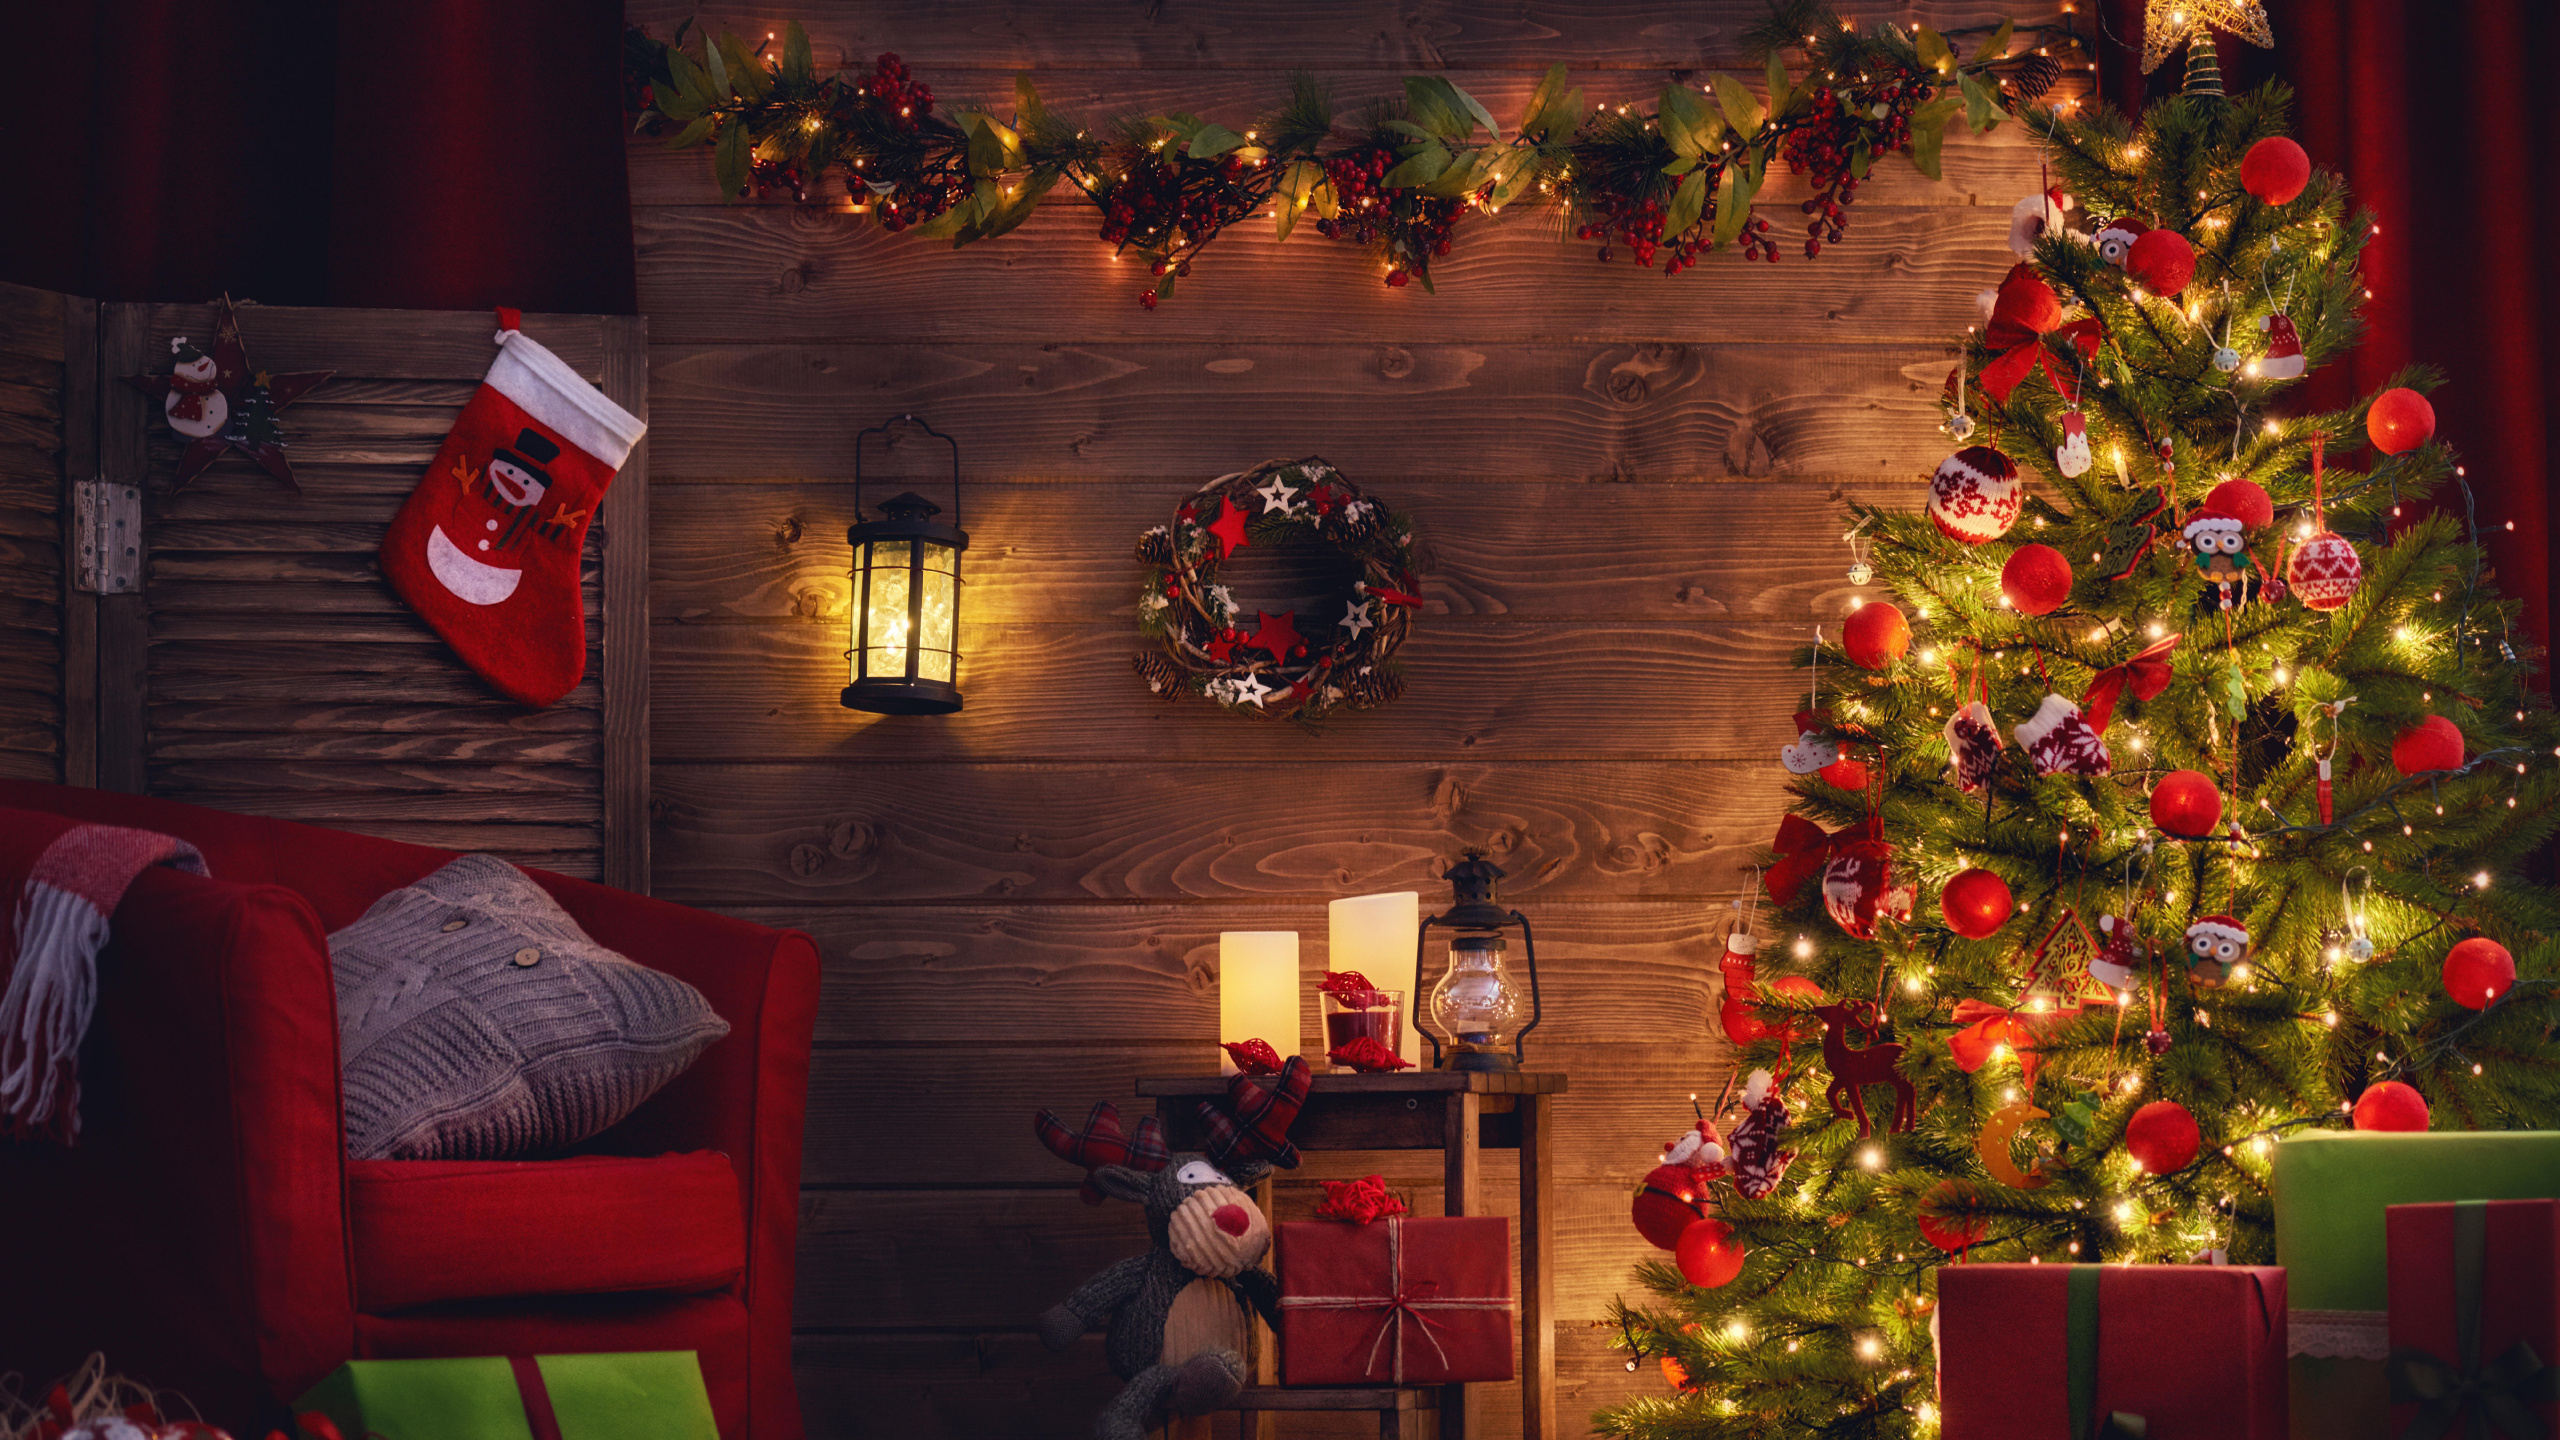 El Día De Navidad, Decoración de la Navidad, Navidad, Luces de Navidad, Calendario de Adviento de Navidad de Madera. Wallpaper in 2560x1440 Resolution